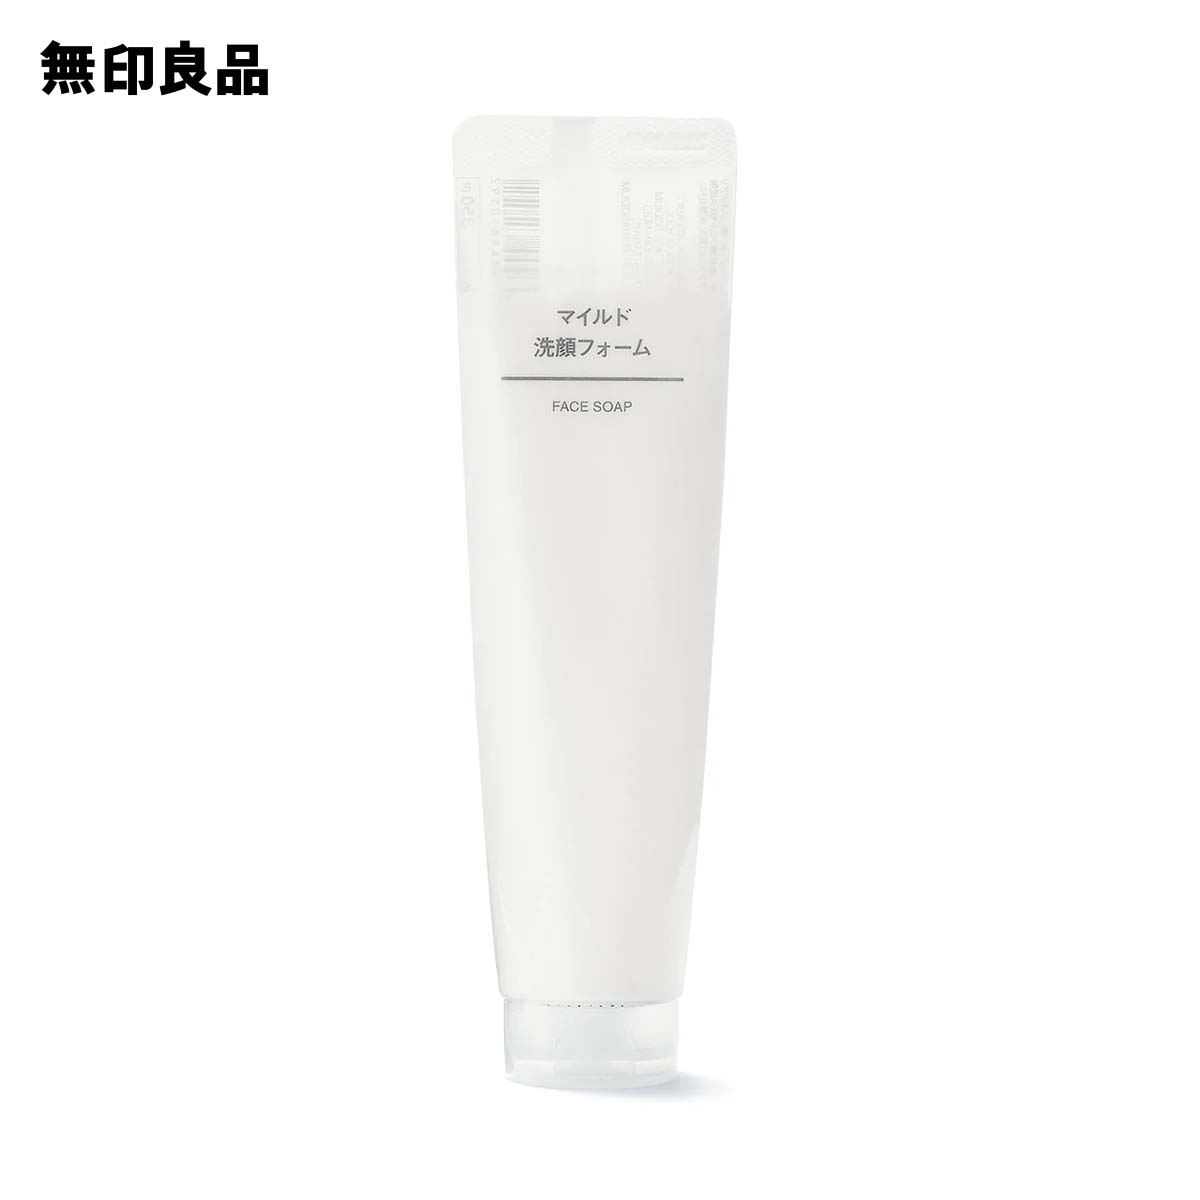 Sữa rửa mặt Muji Face Soap (100g) - Nhật Bản